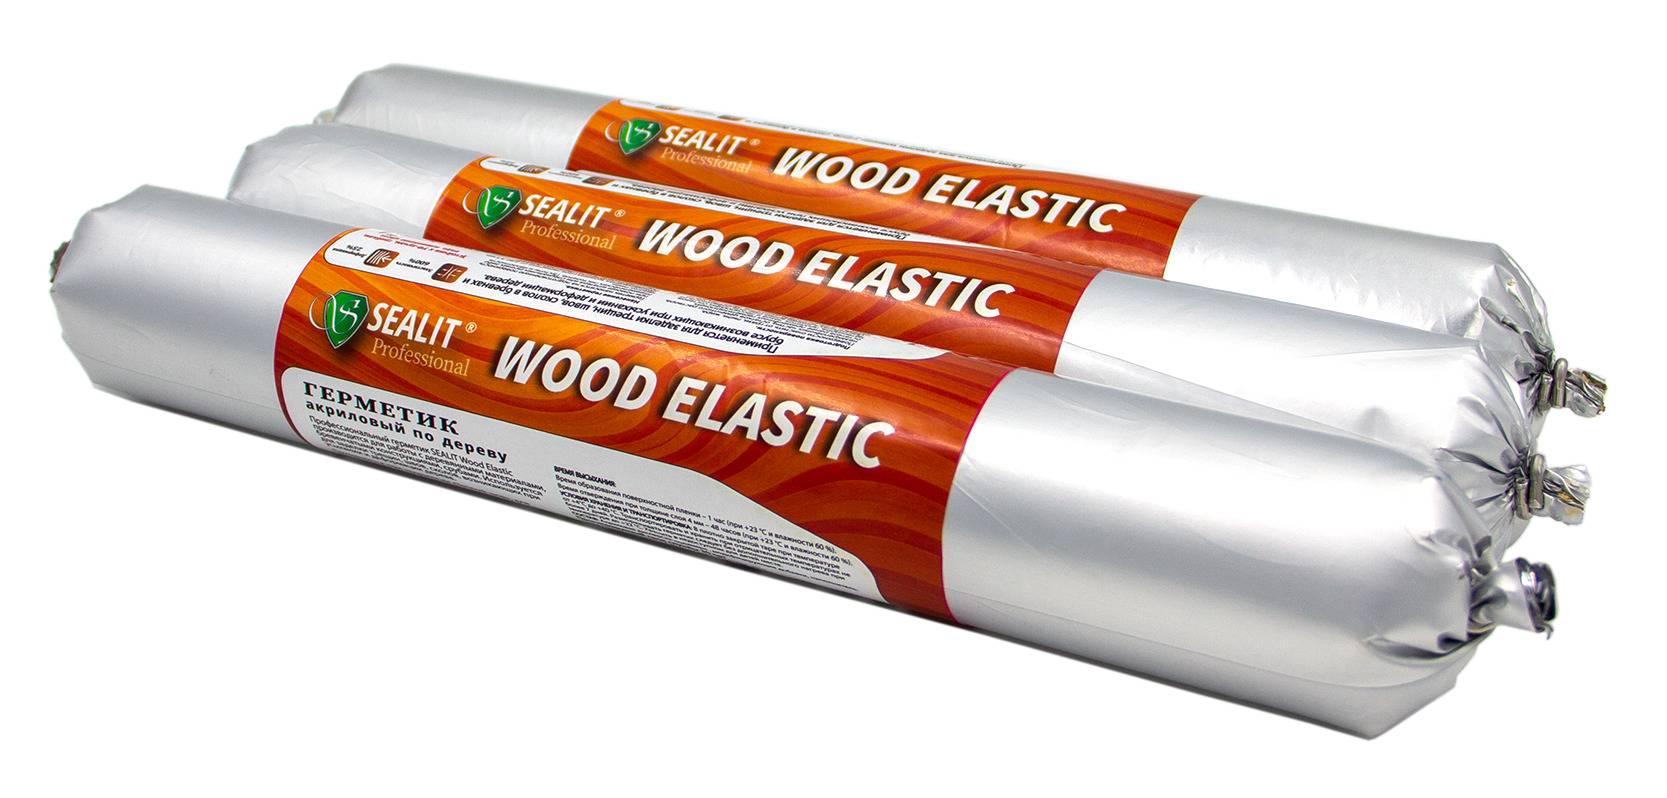 Герметик для дерева акриловый Sealit Wood Elastic, 900 гр, Бук герметик irfix для паркета акриловый ель ольха 310 мл